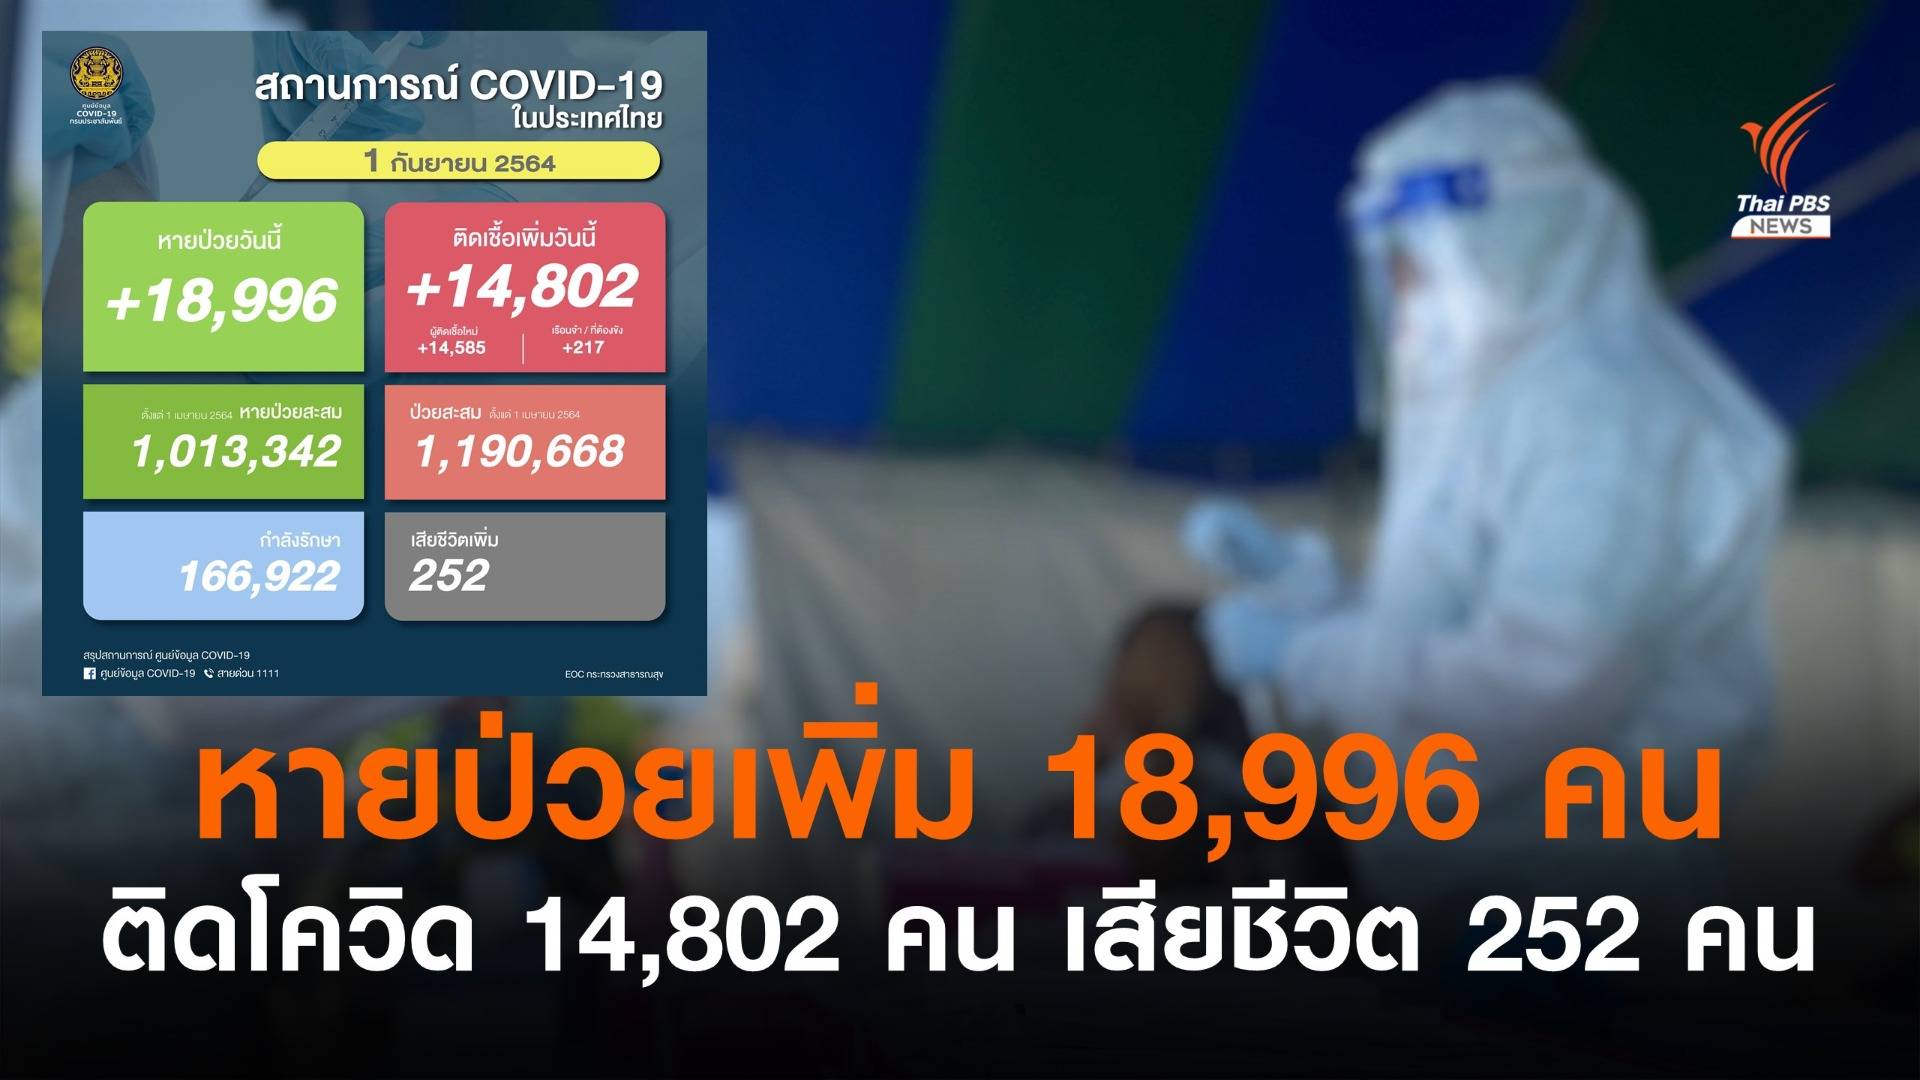 ไทยหายป่วย 18,996 คน ติดโควิดเพิ่ม 14,802 คน